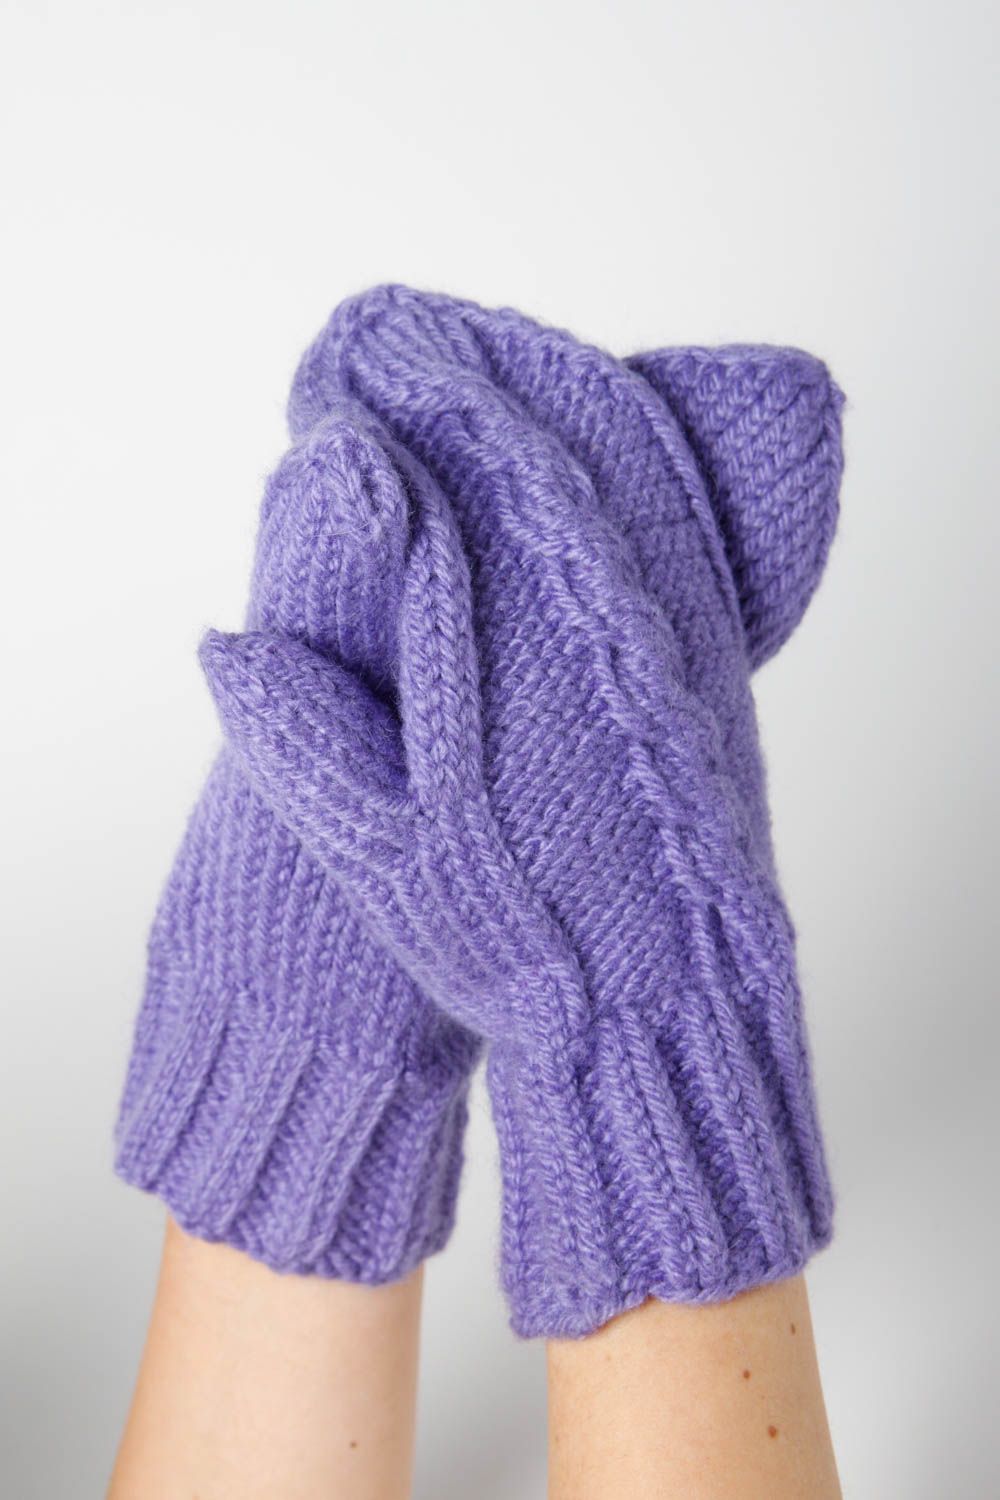 Handmade knitted mittens winter hat winter accessories designer scarf photo 4